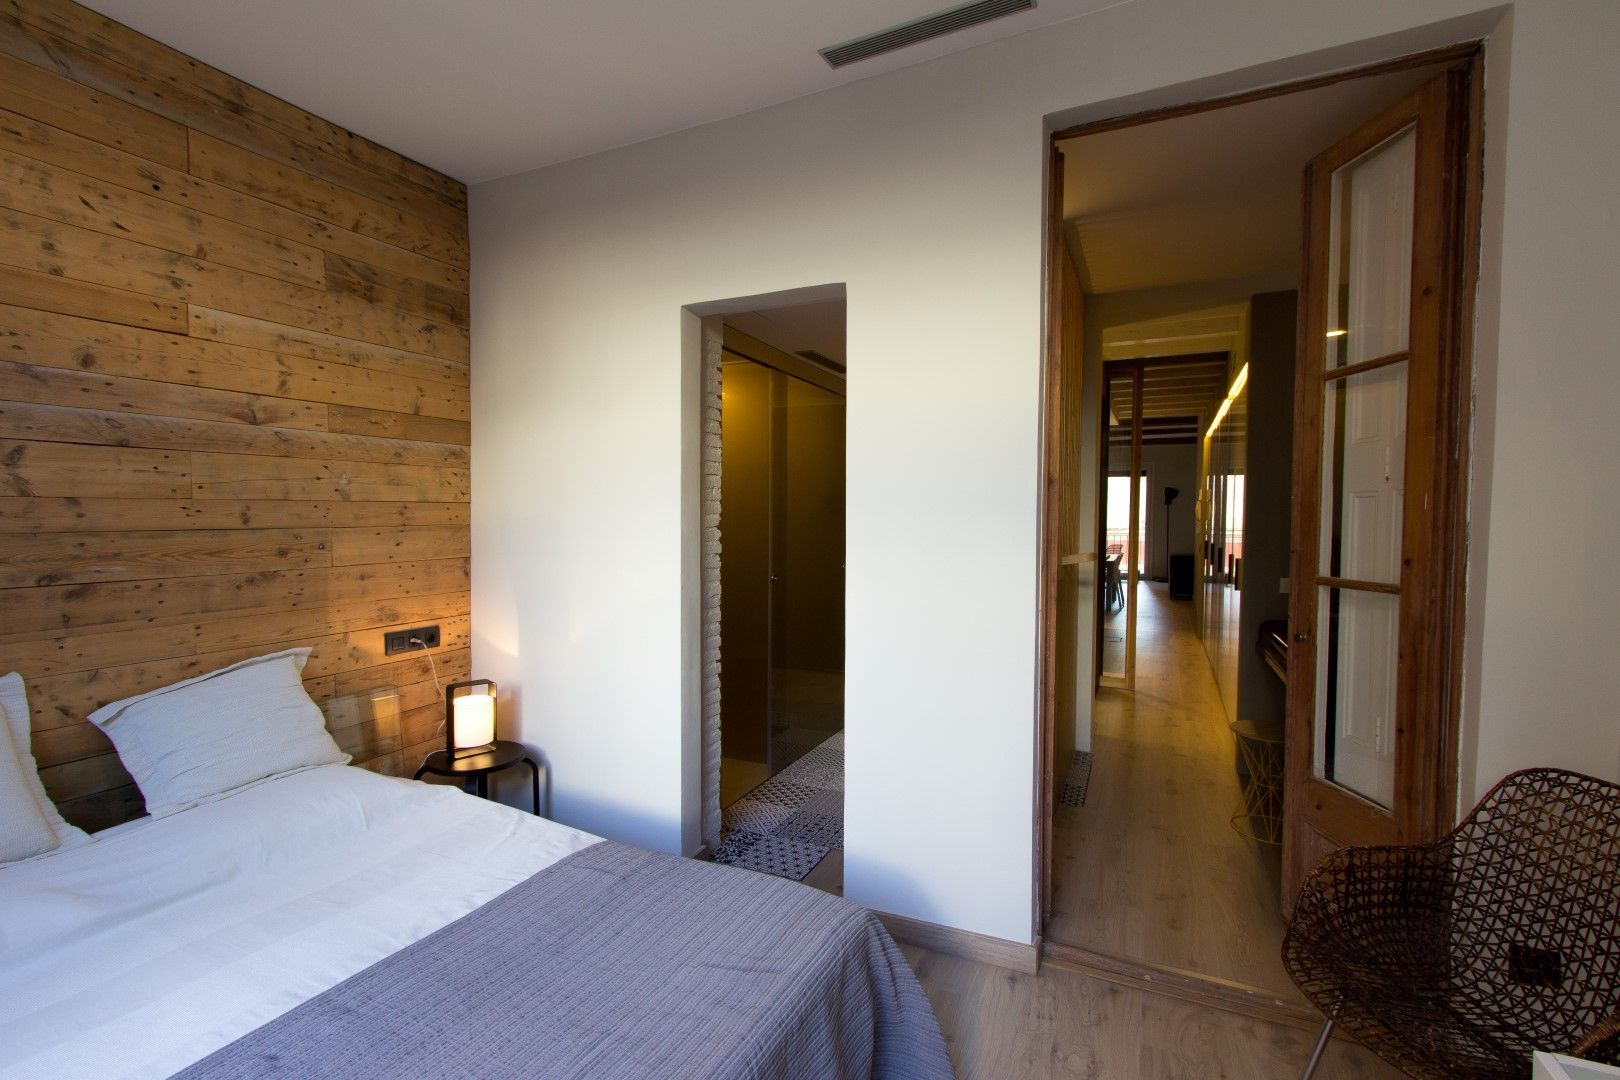 LOFT EN BARCELONA Proyecto de interiorismo para convertir un antiguo piso en un loft donde se valora la calidad del espacio, CREAPROJECTS. Interior design. CREAPROJECTS. Interior design. Quartos modernos